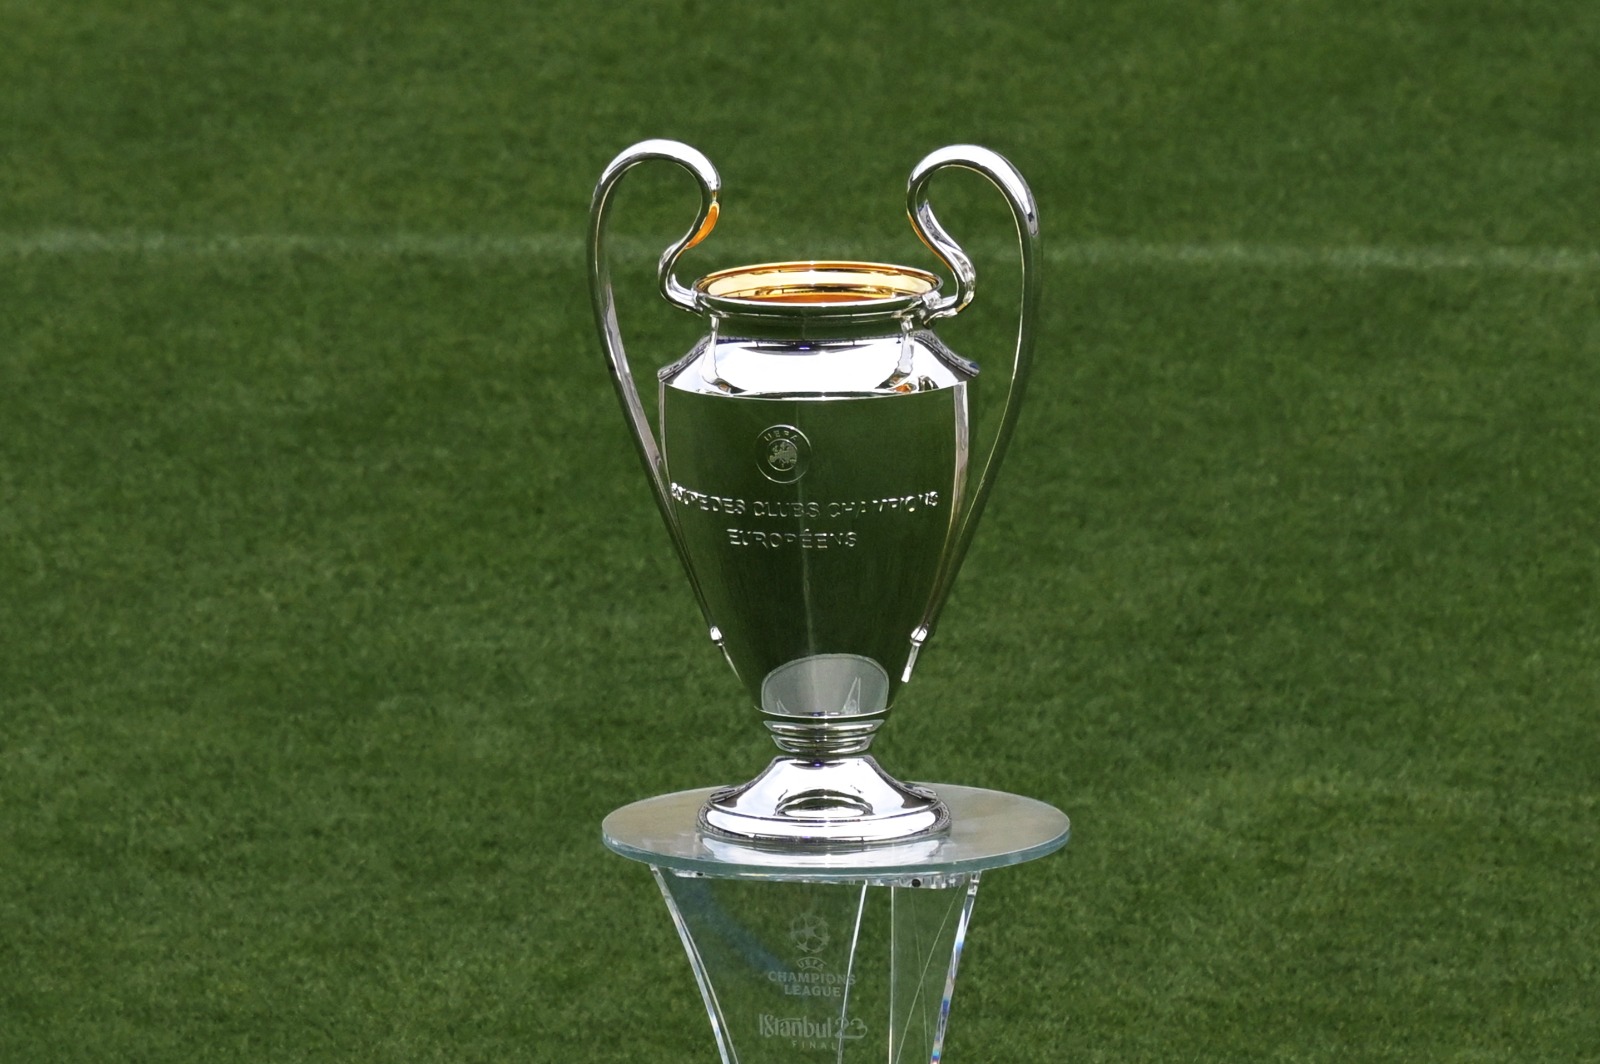 Qual o valor do prêmio que o City vai ganhar com o troféu da Champions?